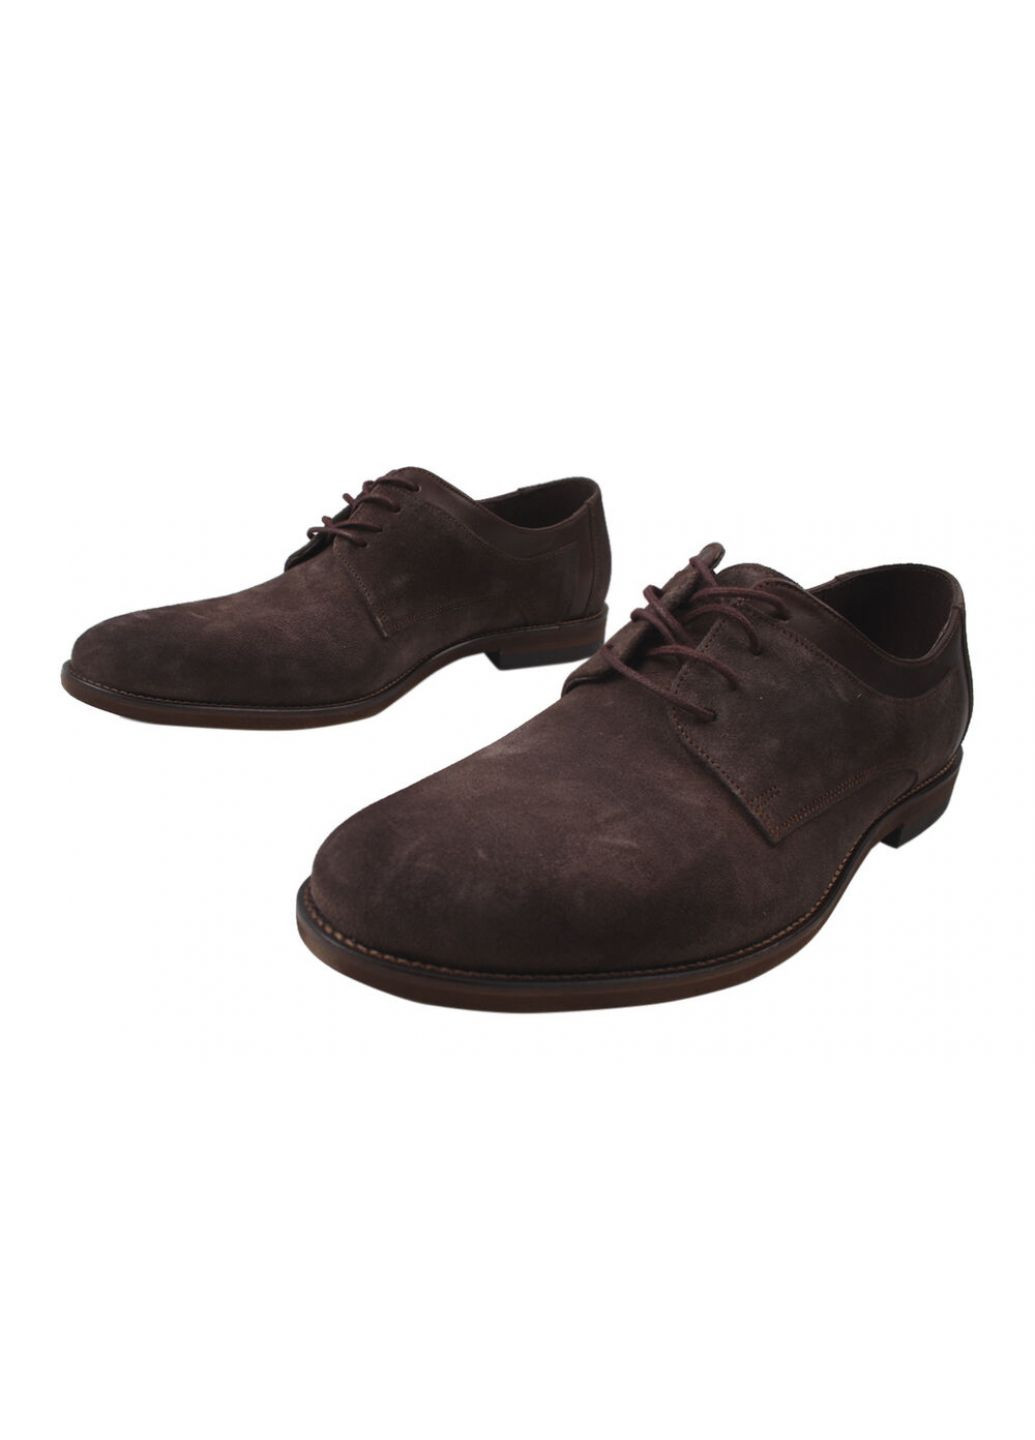 Коричневые туфли класика мужские натуральная замша, цвет кабир Bucci